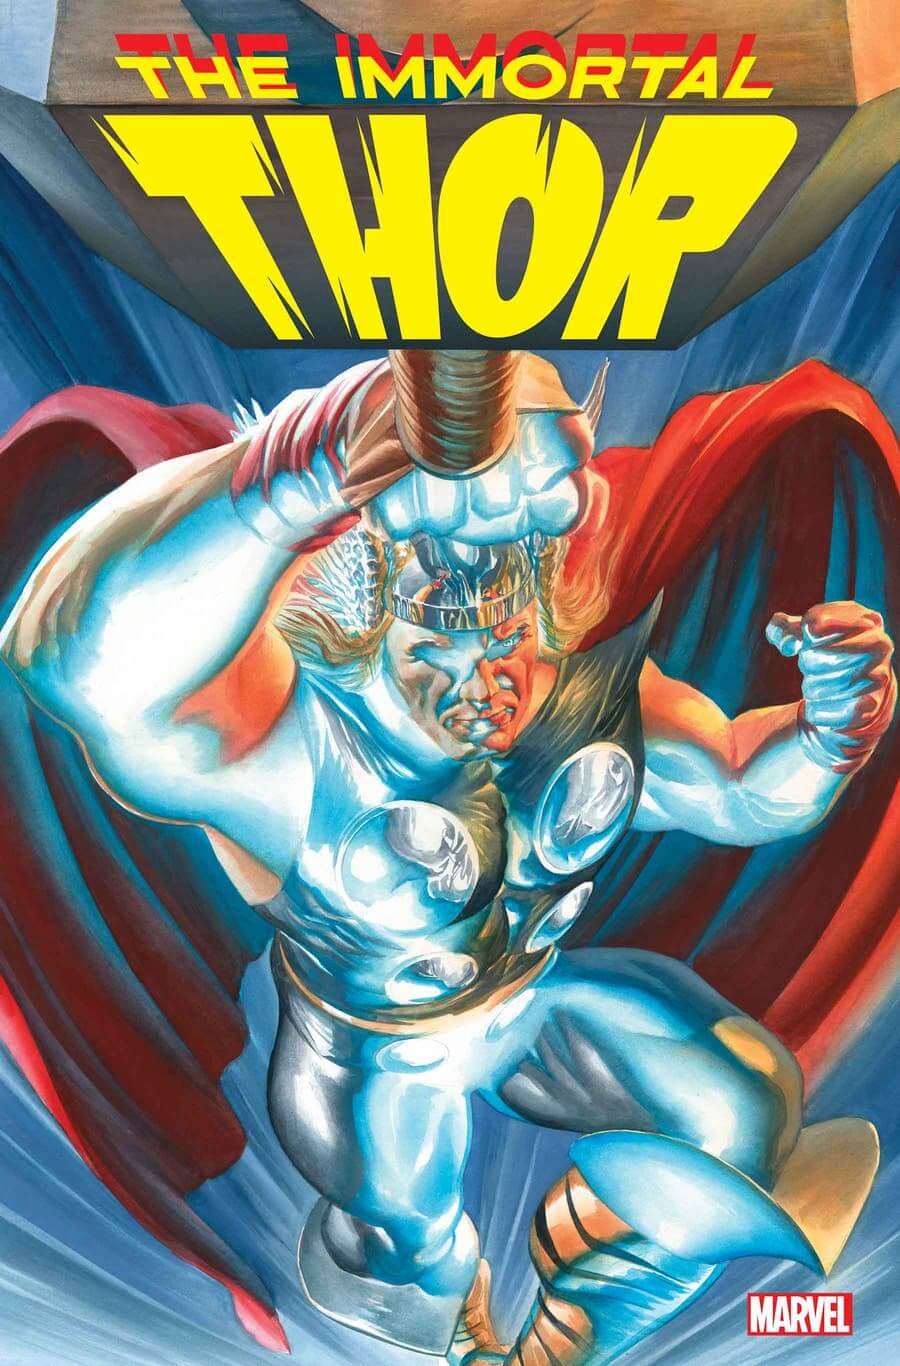 Couverture de Immortal Thor 1 par Alex Ross, premier numéro de la série d'Al Ewing.